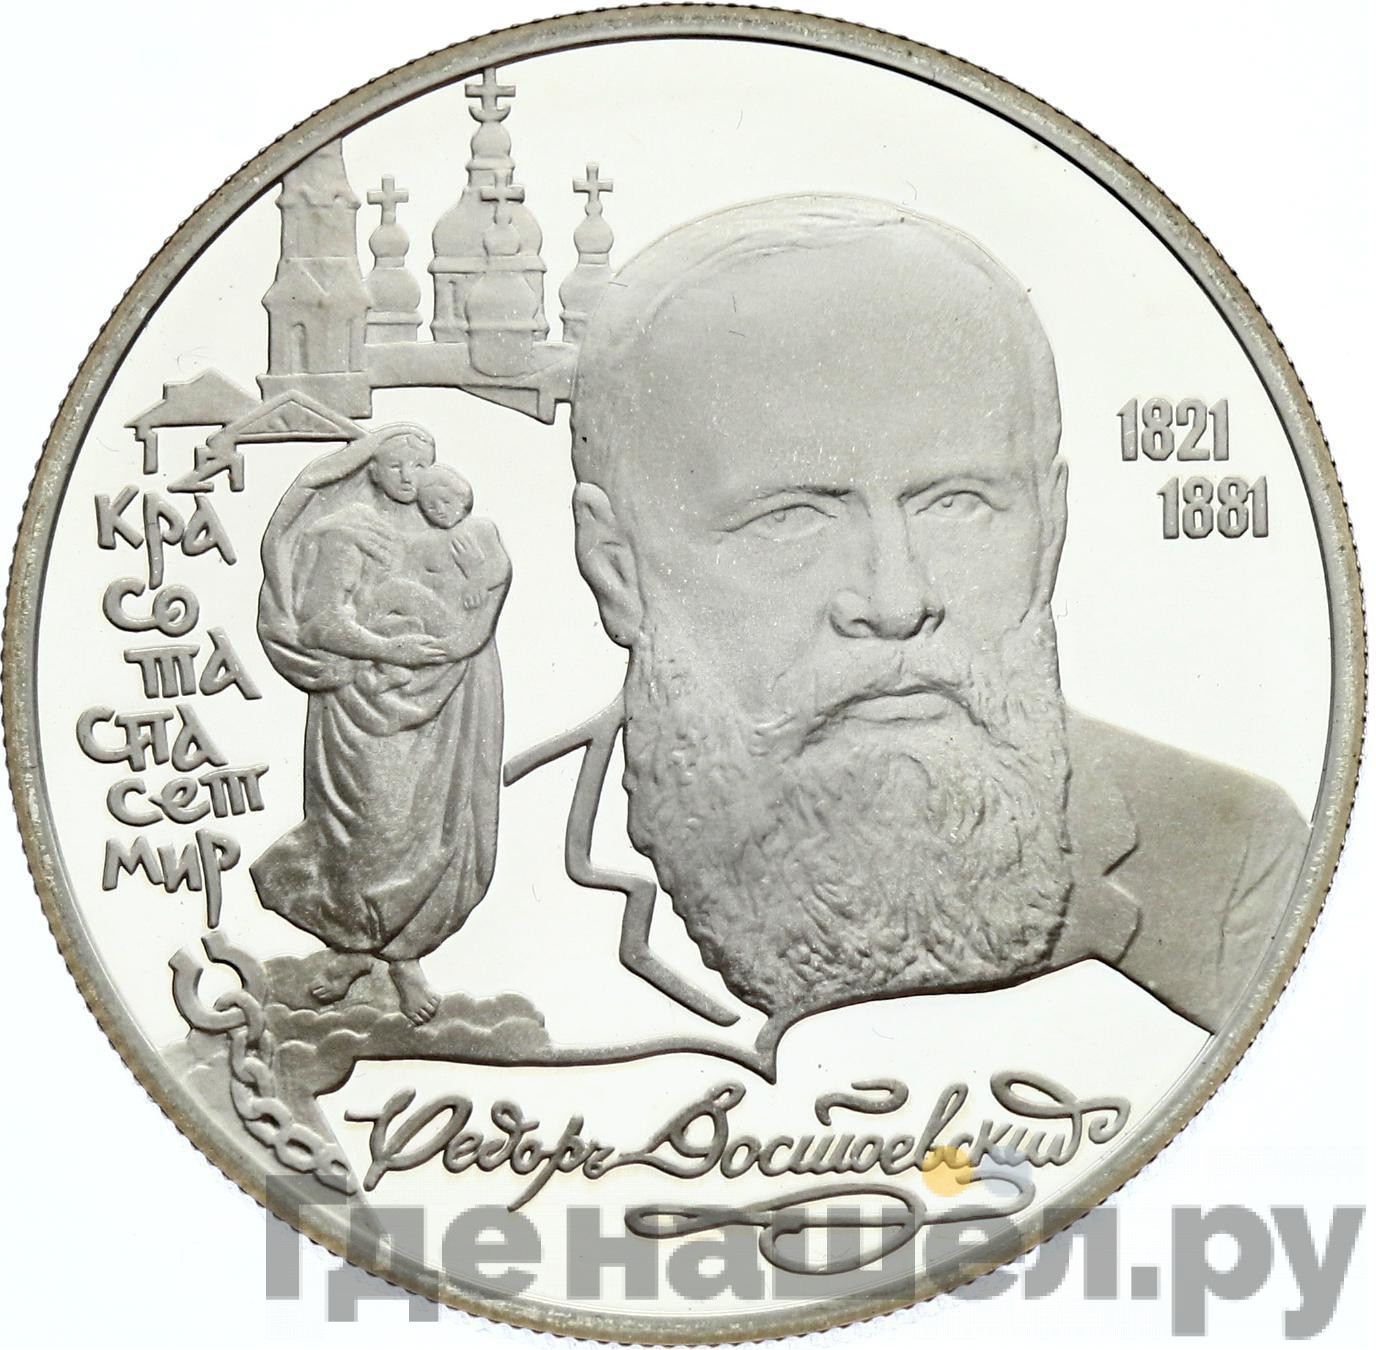 2 рубля 1996 года ЛМД 175 лет со дня рождения Ф.М. Достоевского